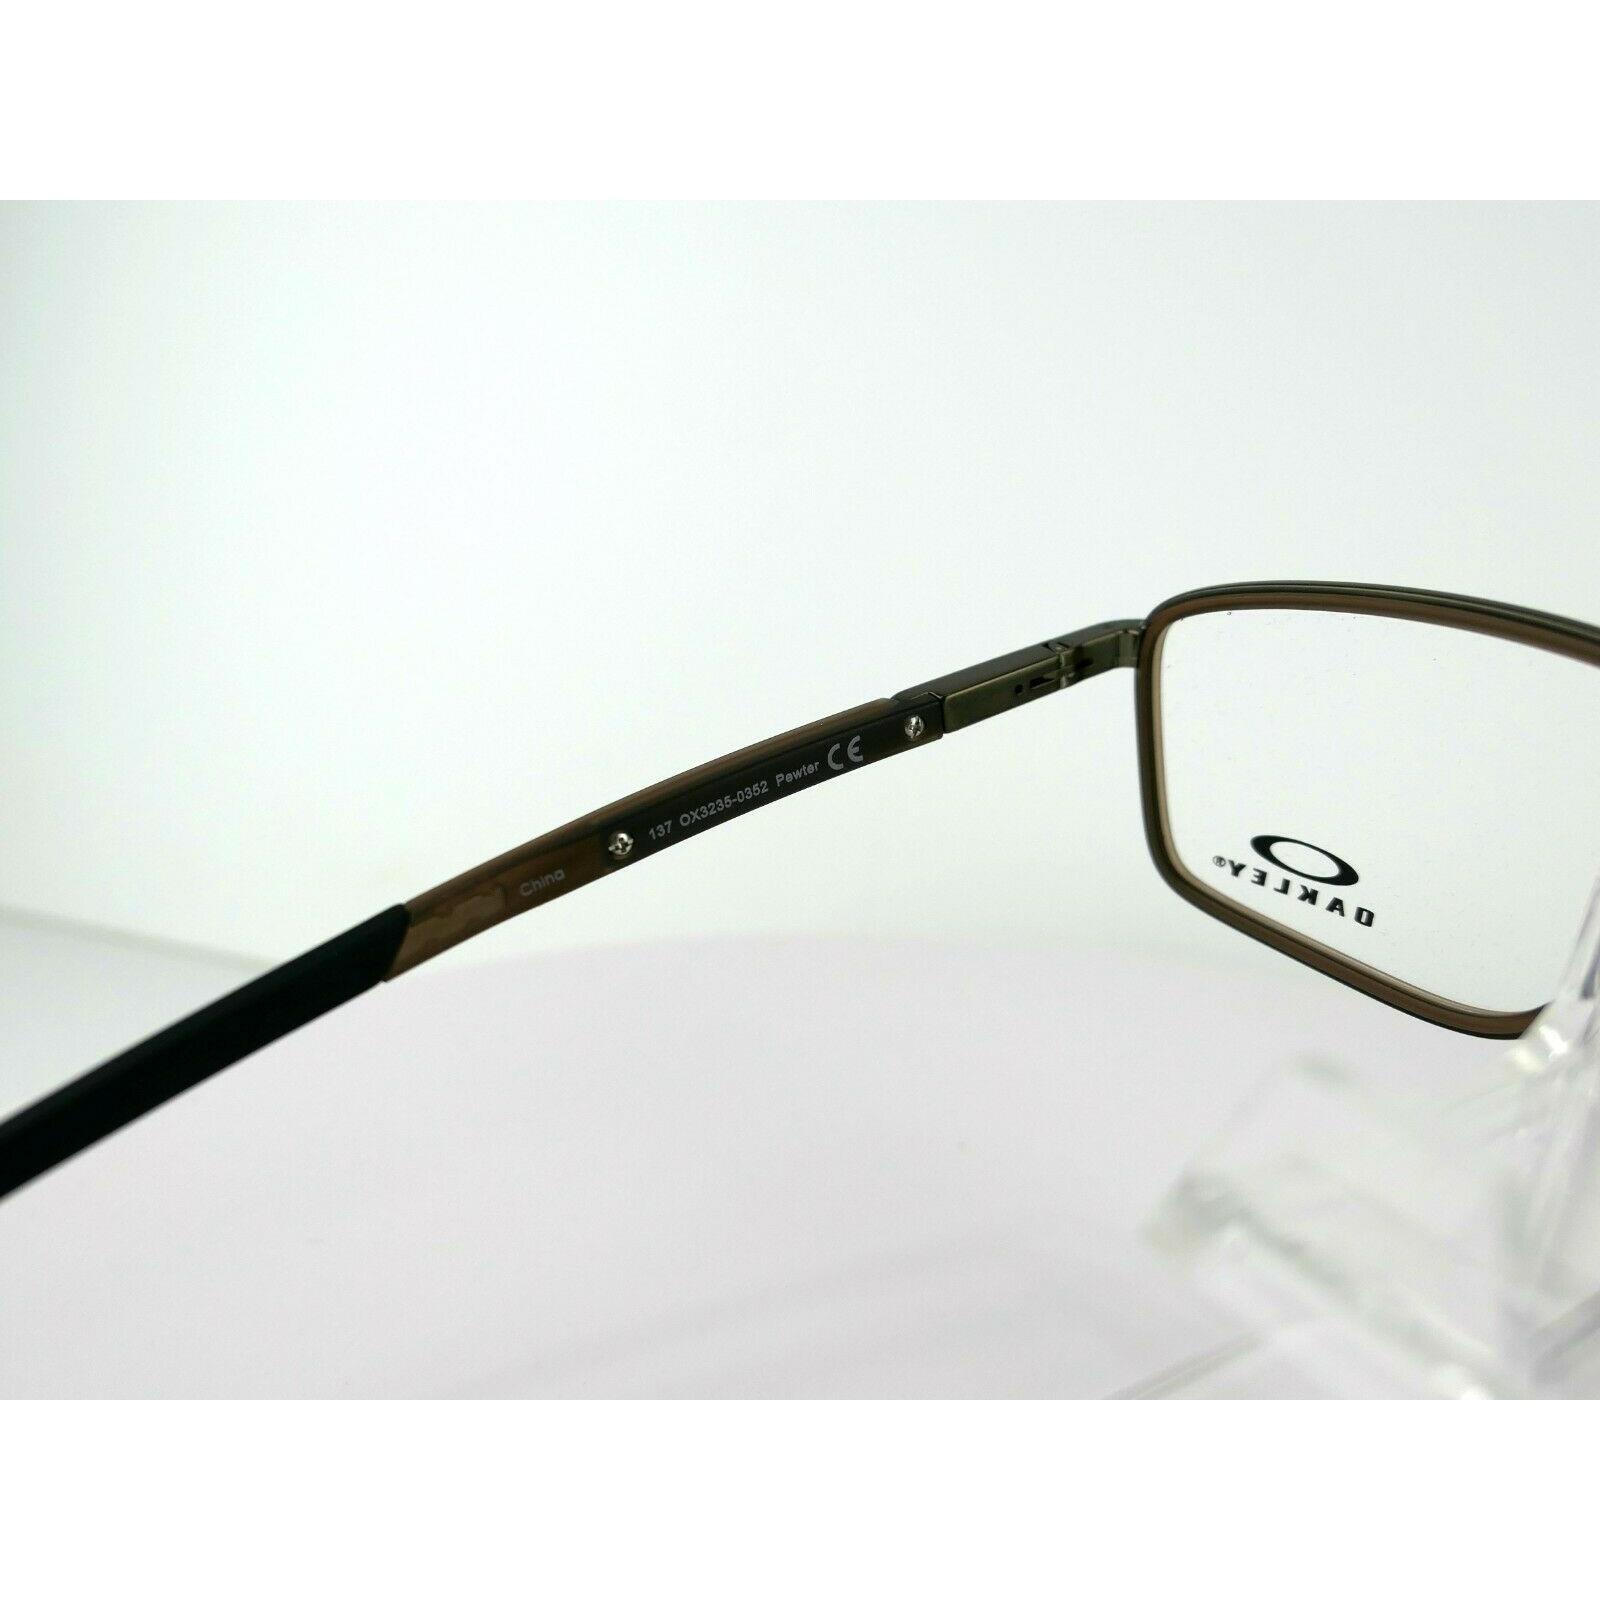 Oakley eyeglasses Spindle - Brown , Pewter/ Matt Dark Brown Frame 4